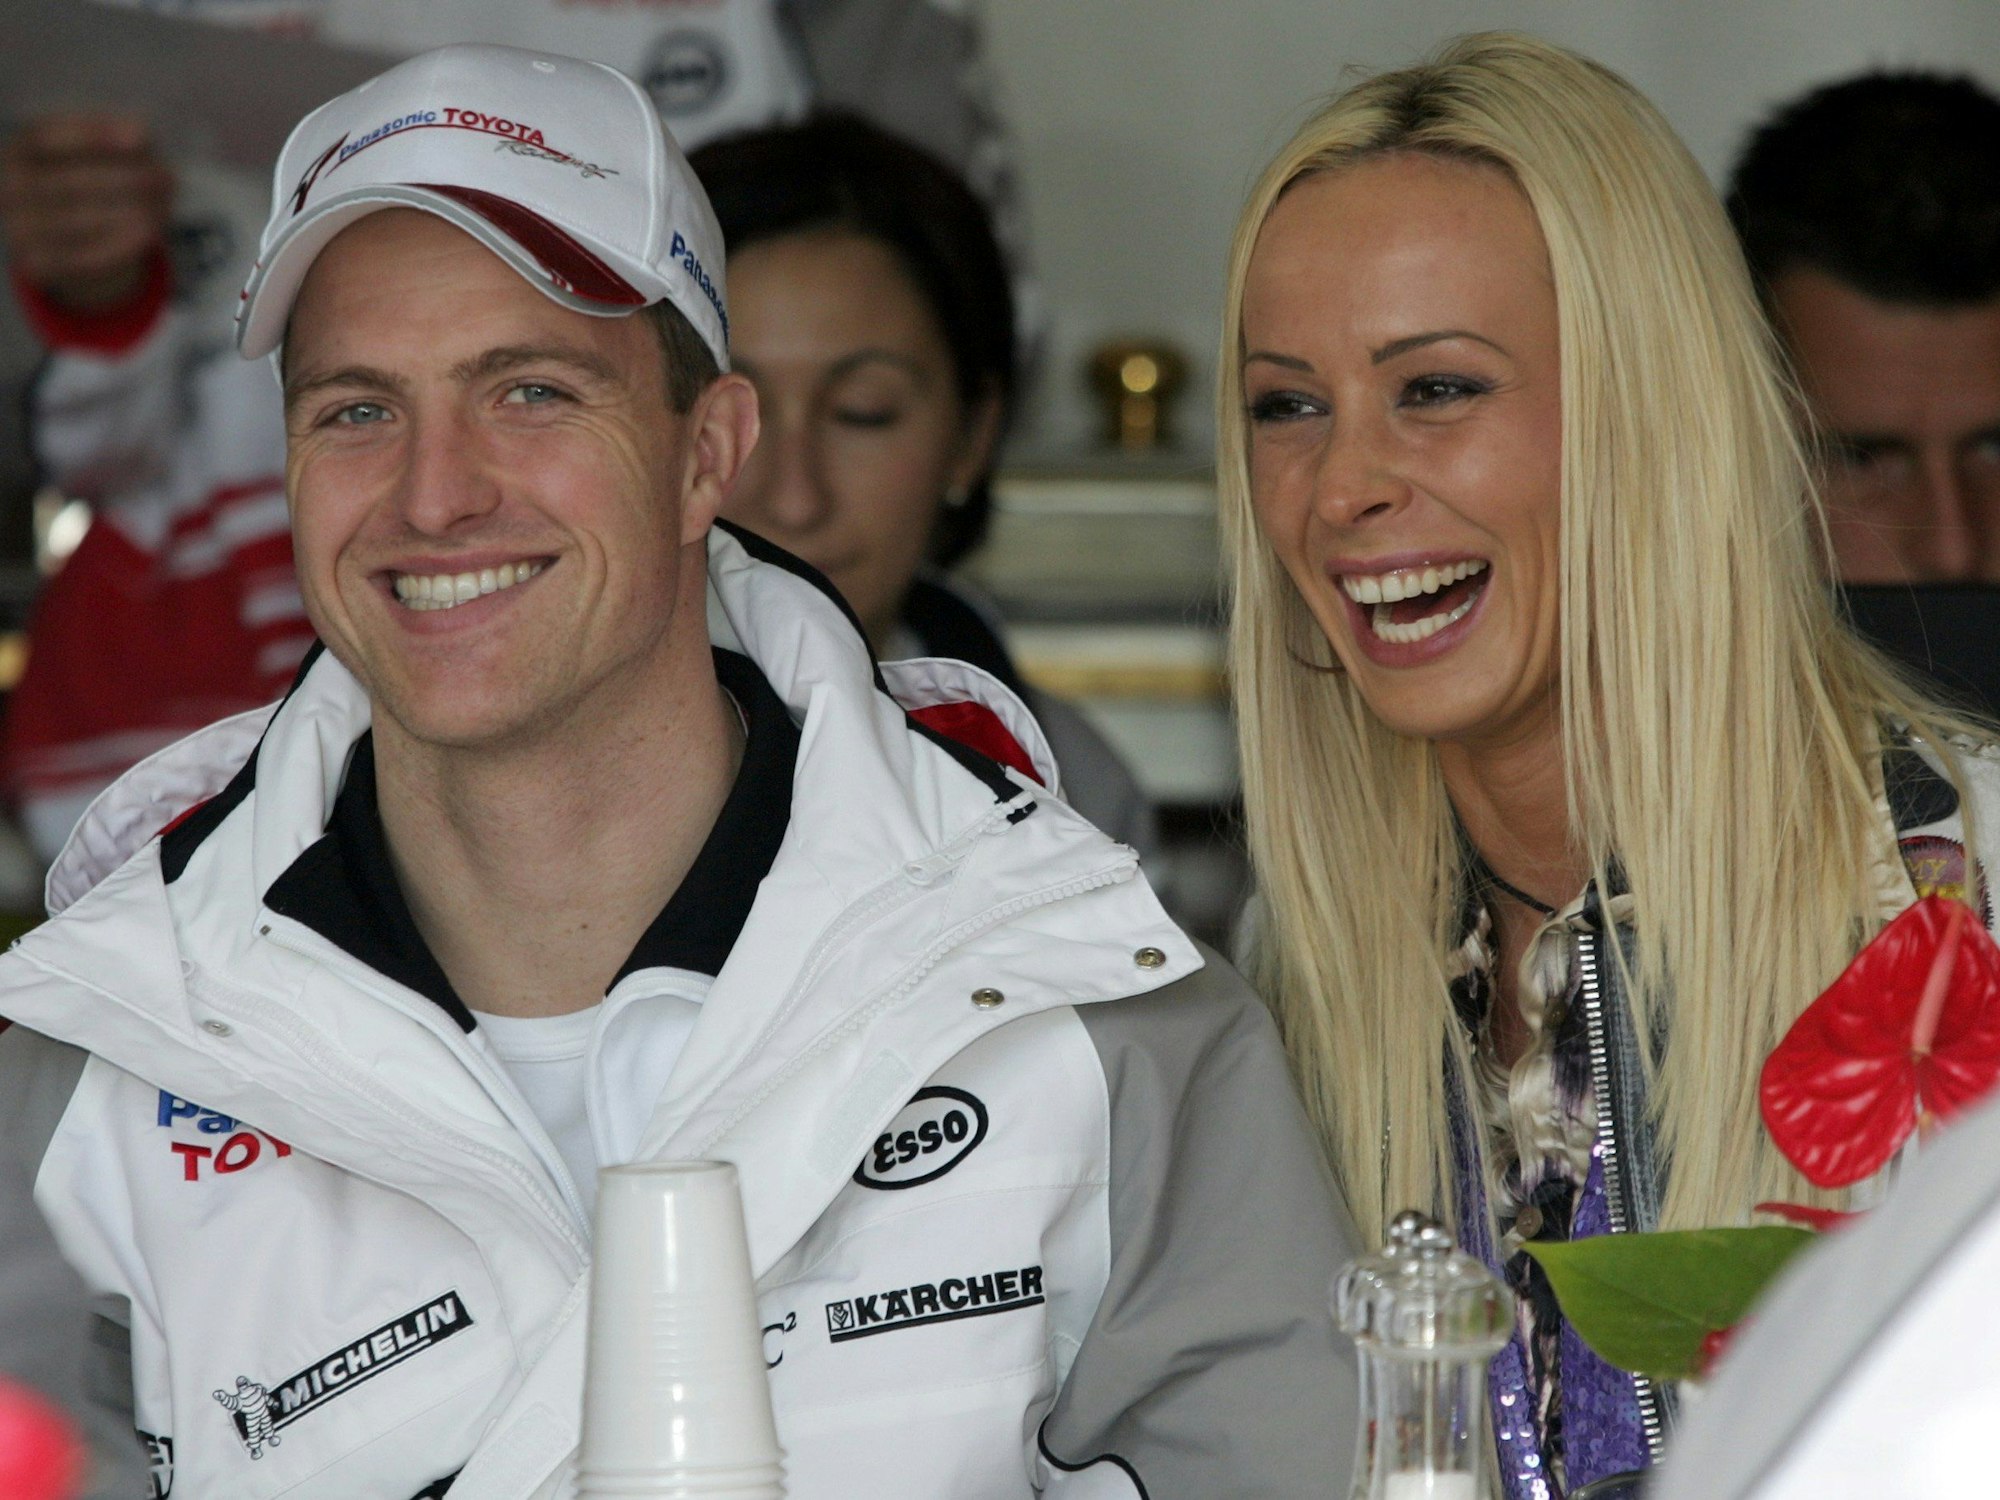 Der deutsche Formel-1-Pilot Ralf Schumacher (links) und seine Frau Cora Schumacher (rechts) lachen auf der Grand-Prix-Strecke im Albert Park, hier im März 2005 in Melbourne, Australien.